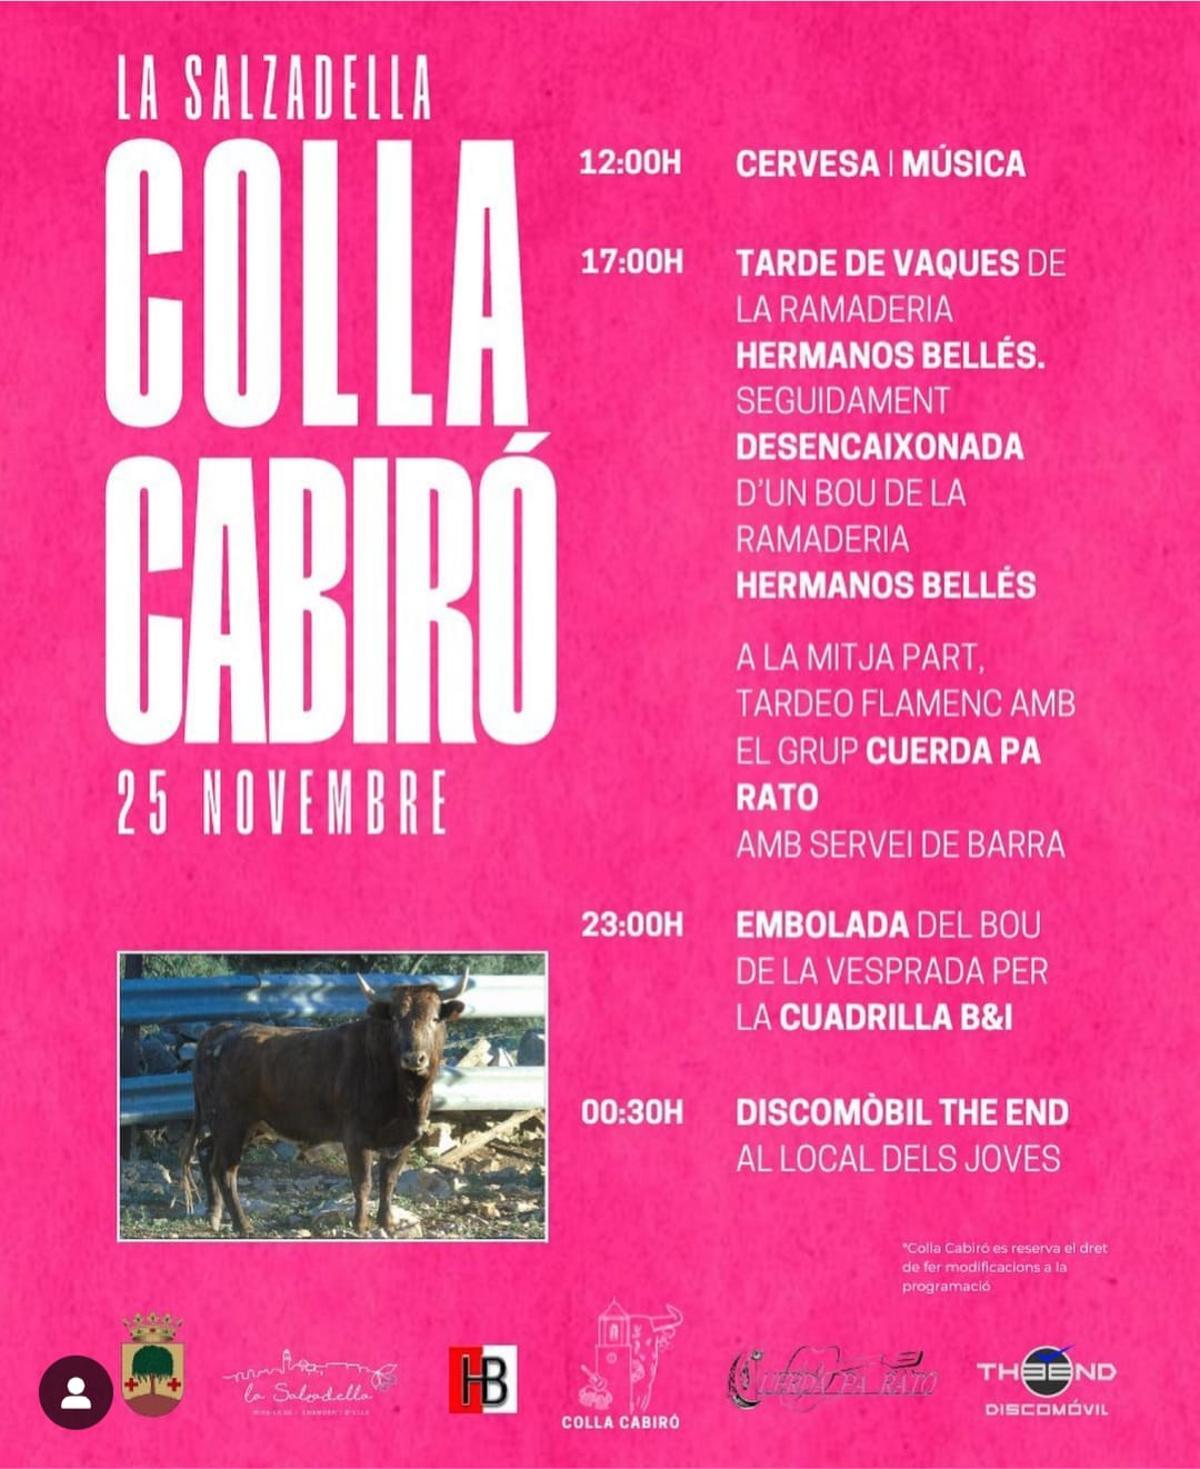 Cartel de la jornada que organiza la Colla Cabiró en la Salzadella.